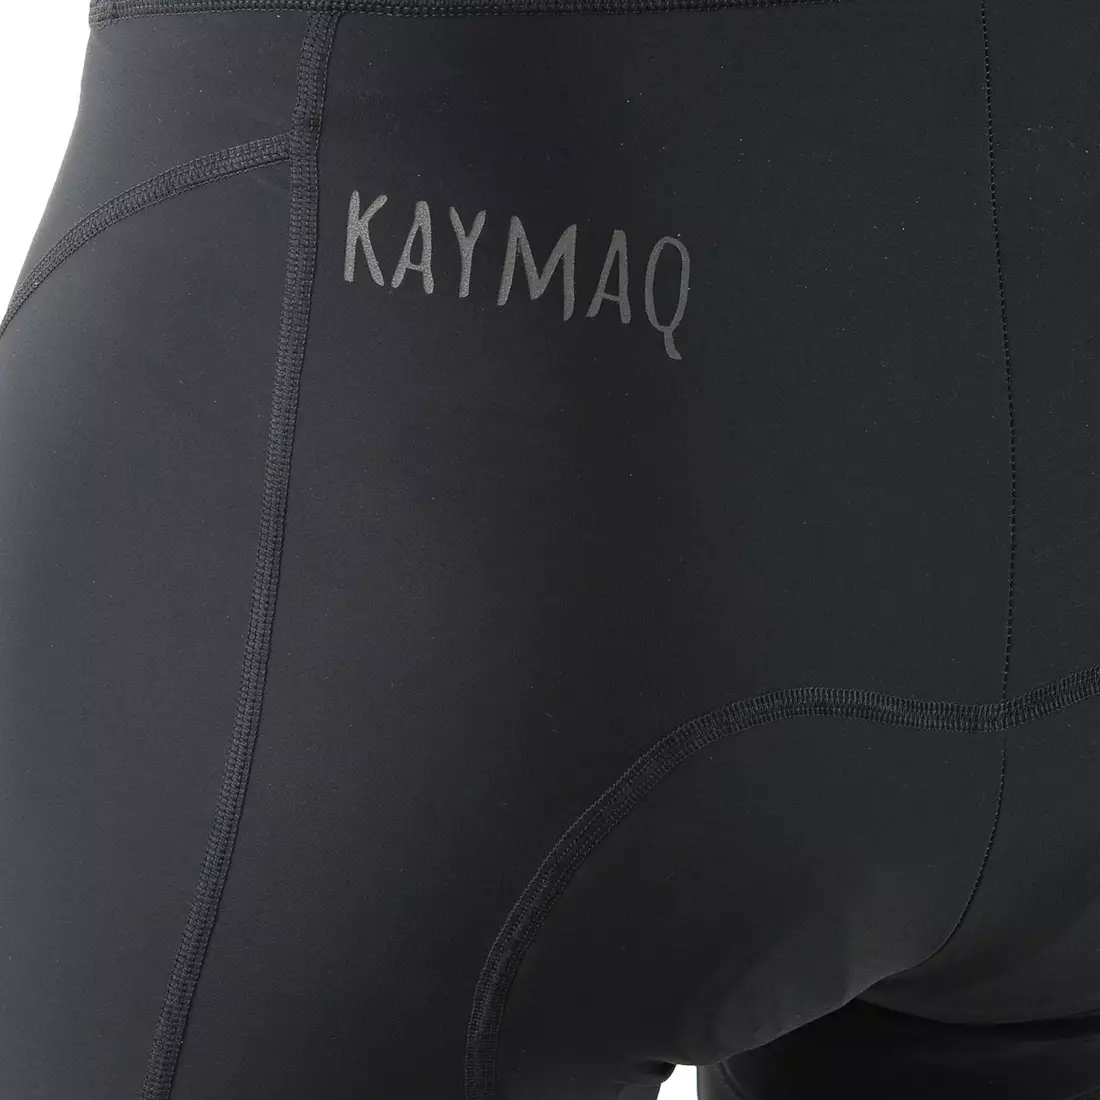 KAYMAQ ELBIBM601 nadrágtartós férfi kerékpáros rövidnadrág, fekete